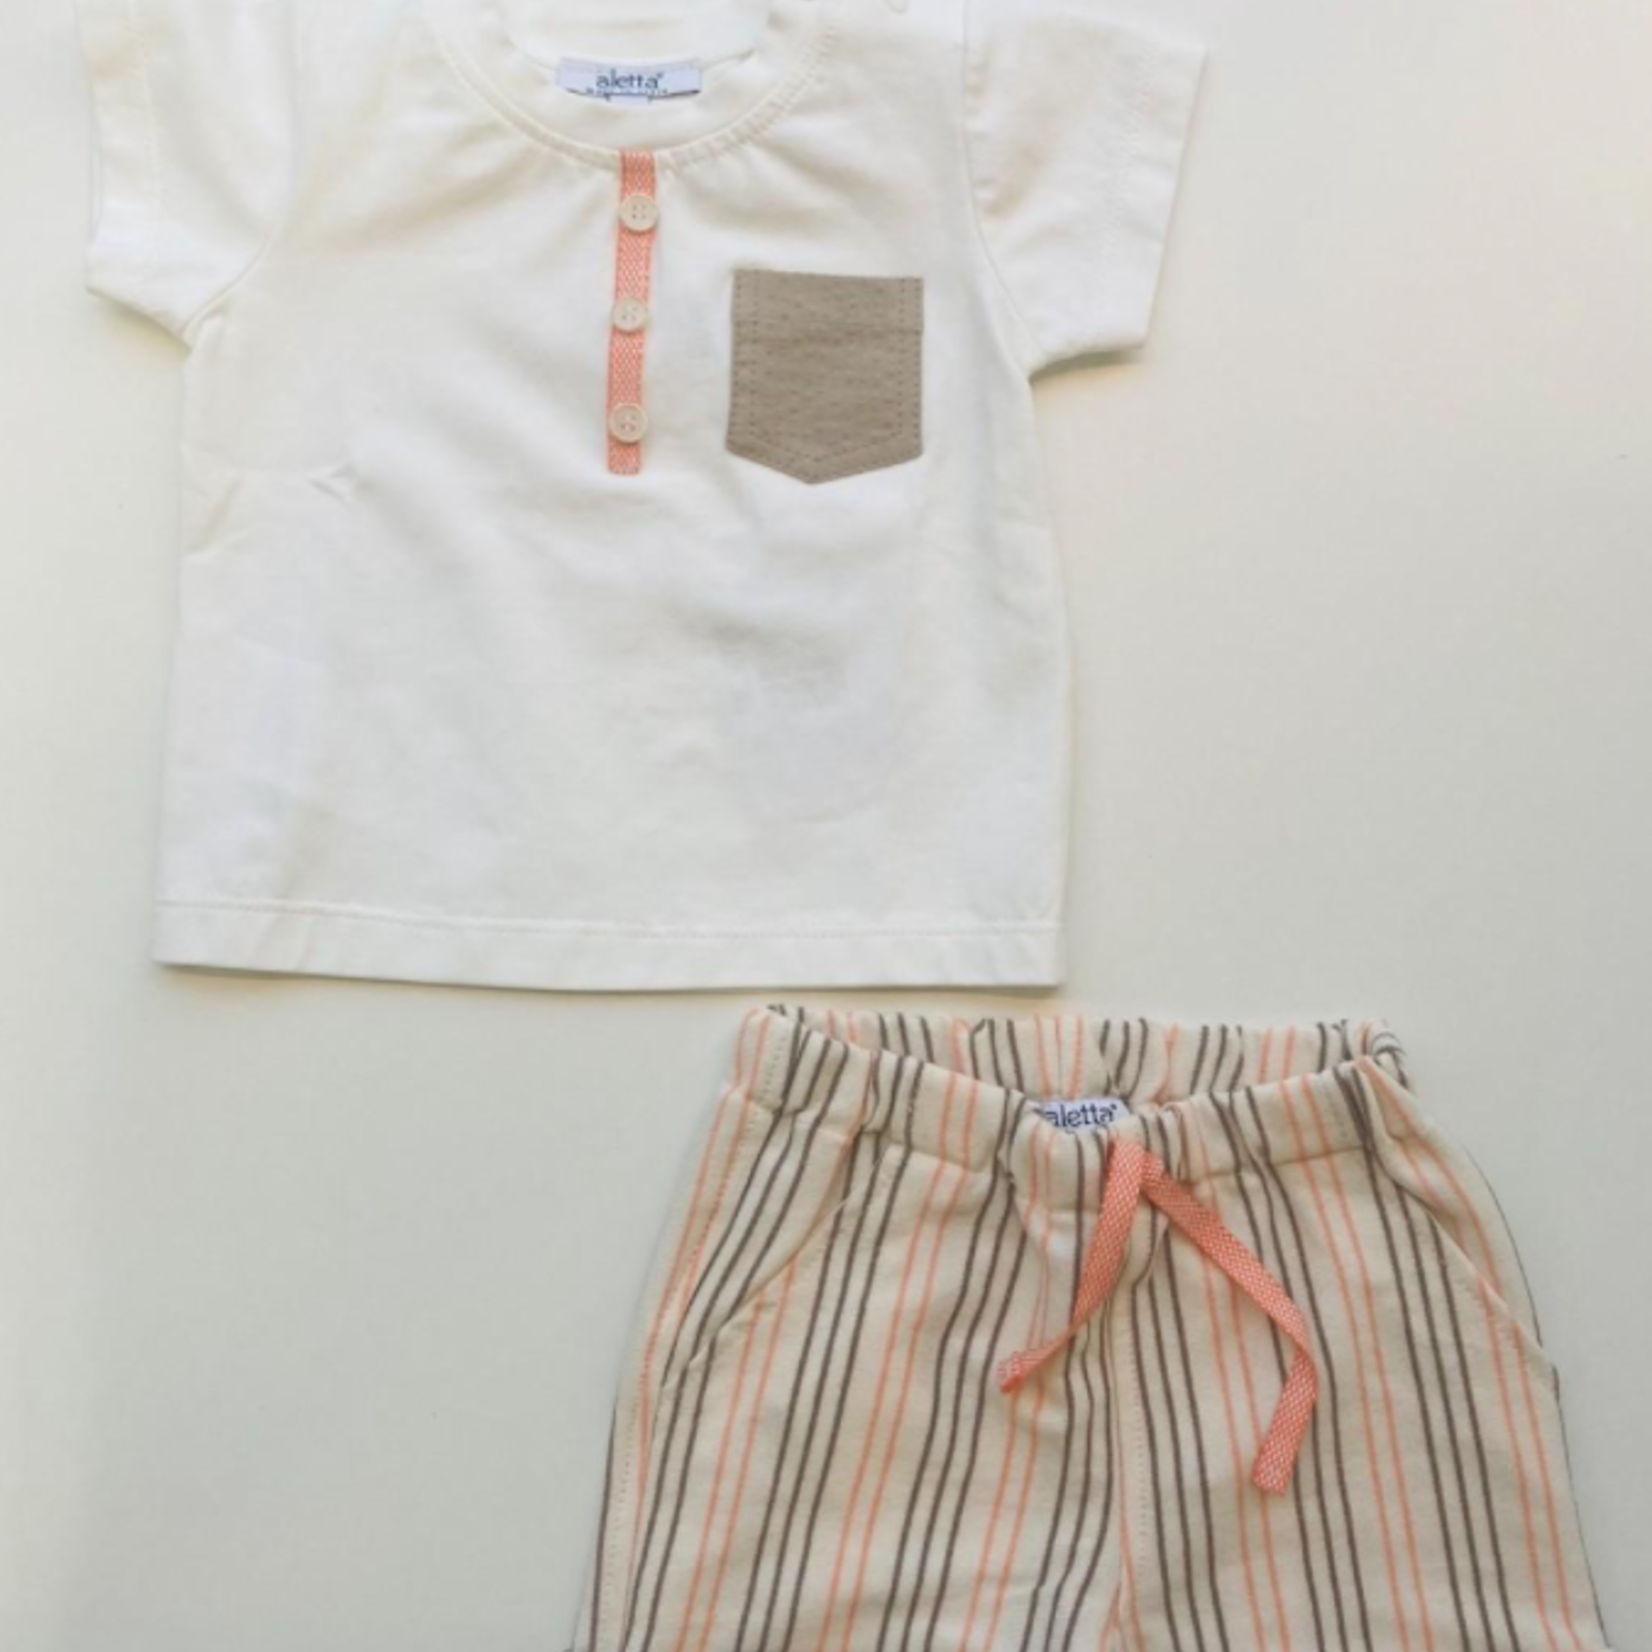 Aletta Aletta - T-shirt in wit met detail in oranje en bruin